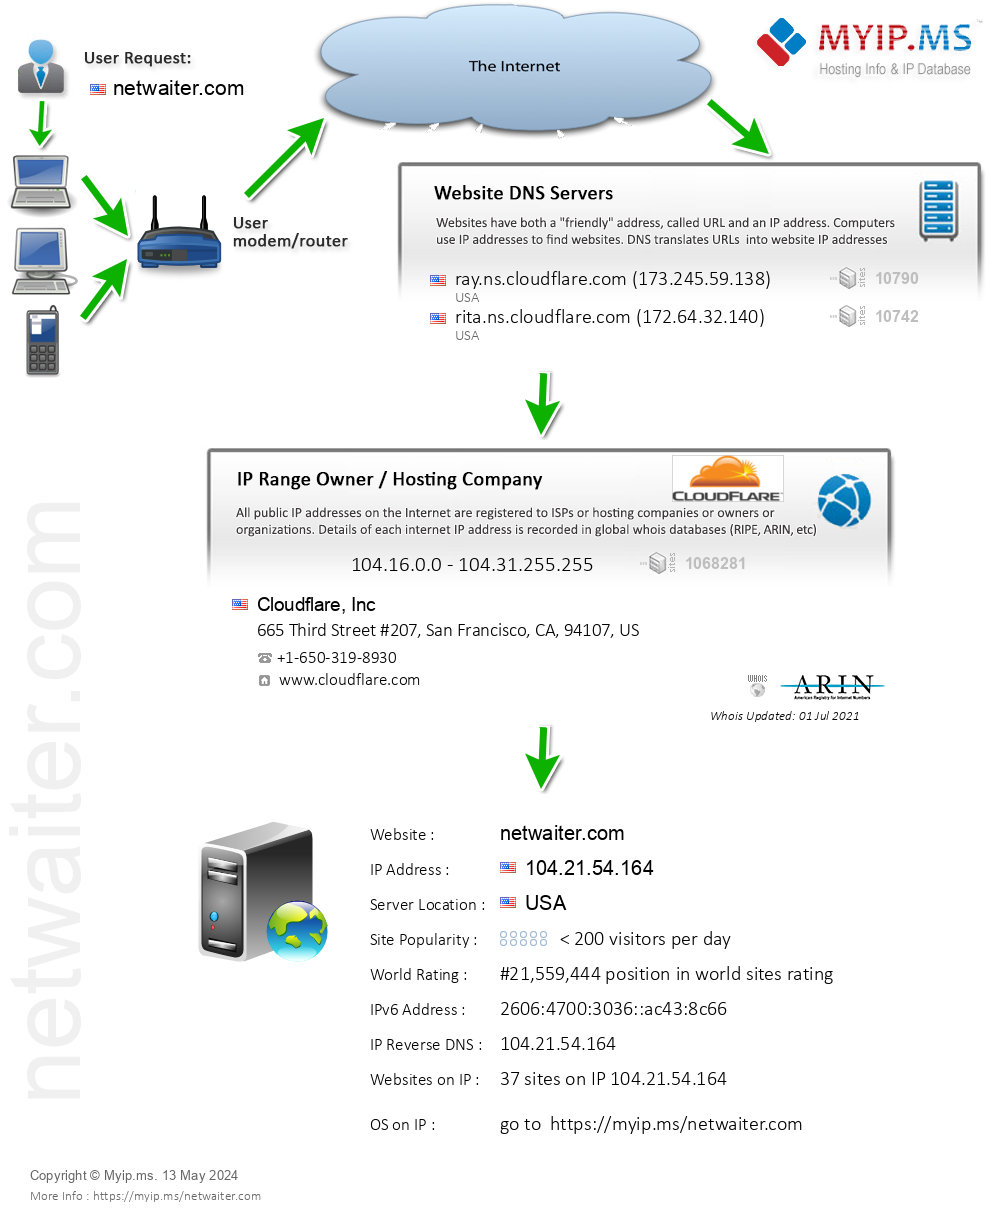 Netwaiter.com - Website Hosting Visual IP Diagram